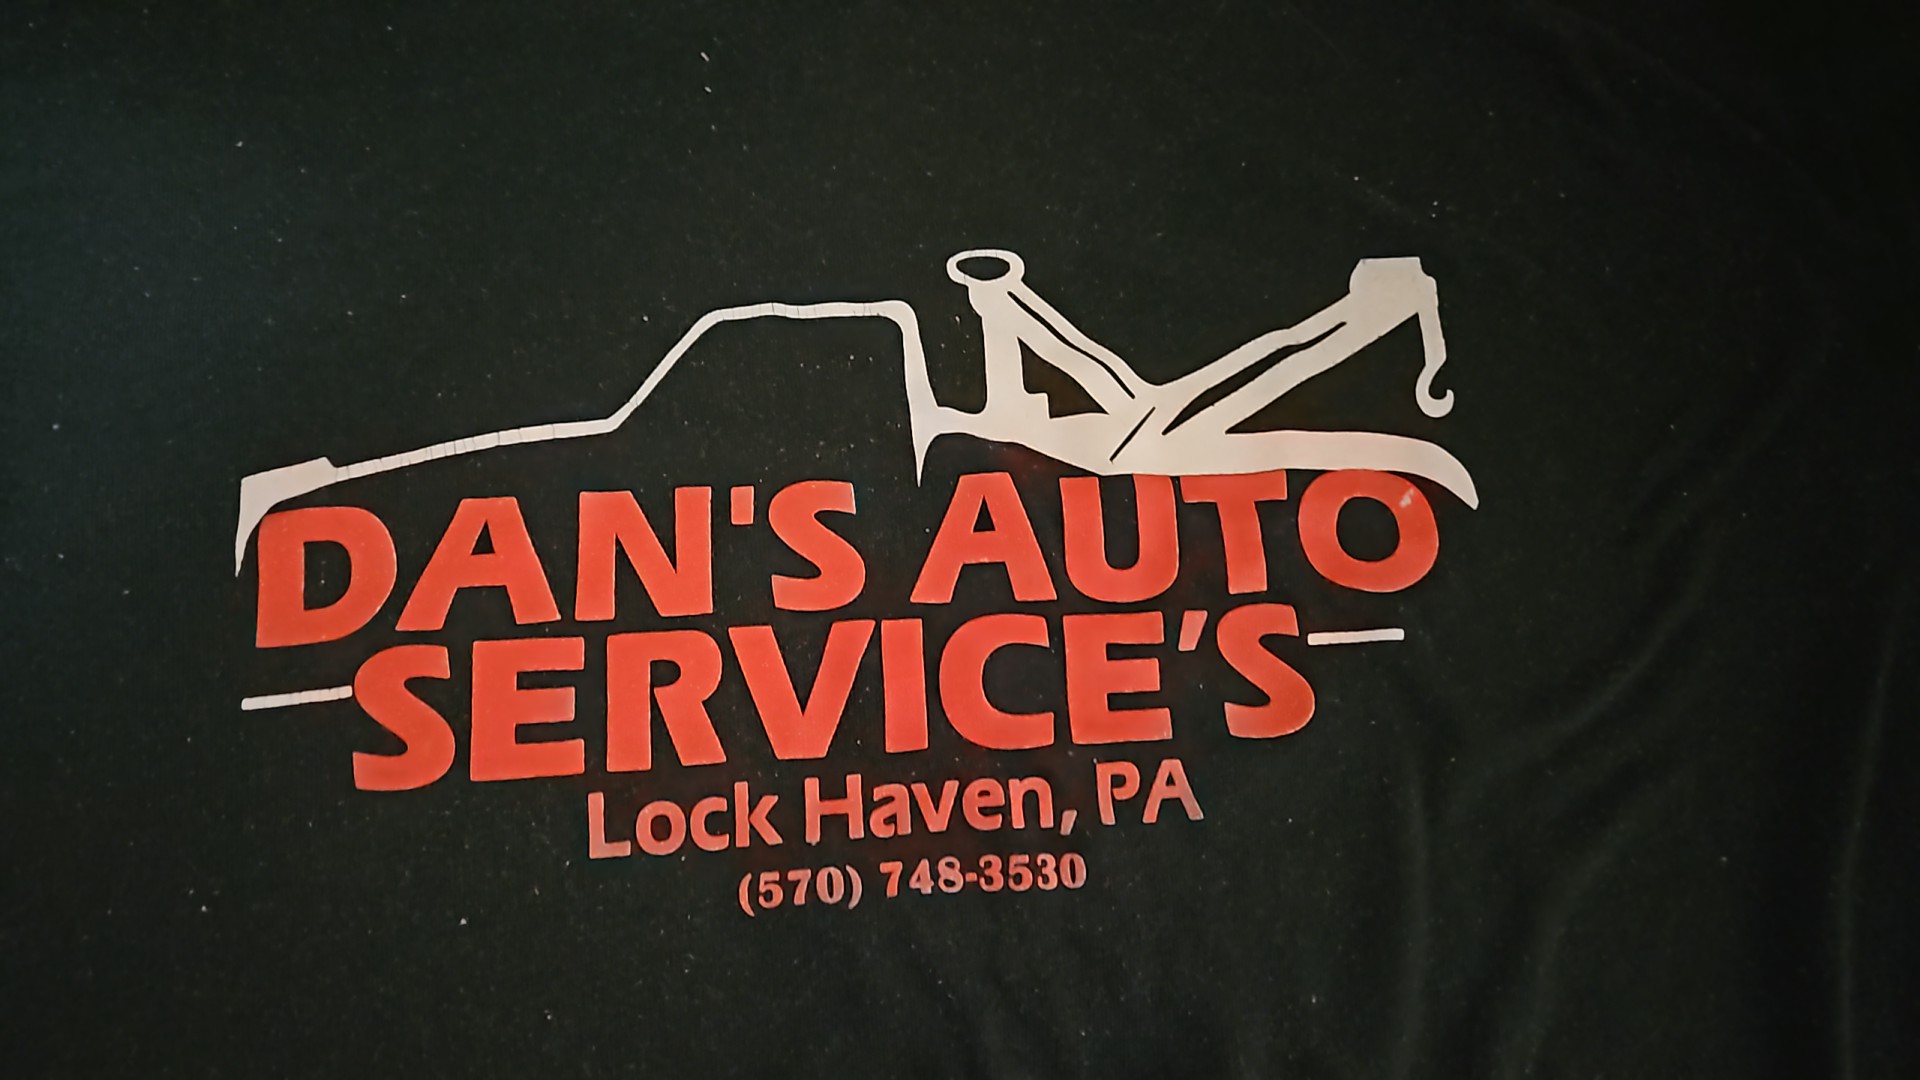 Dan's Auto Services